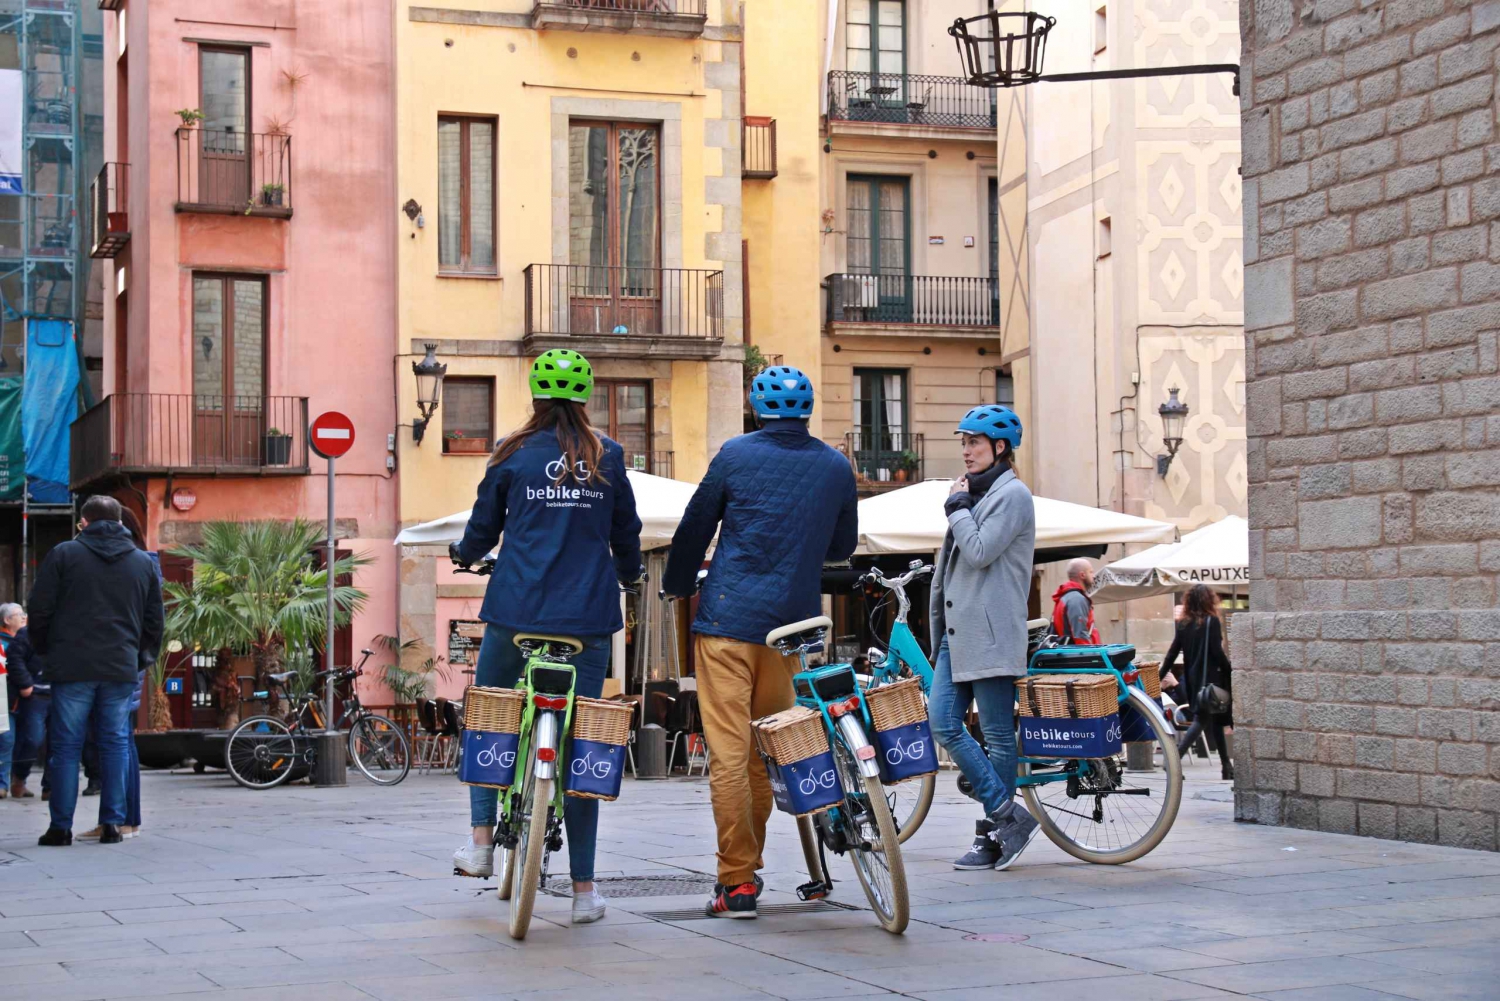 Barcelona Main Sights 2.5-Hour Tour by E-Bike